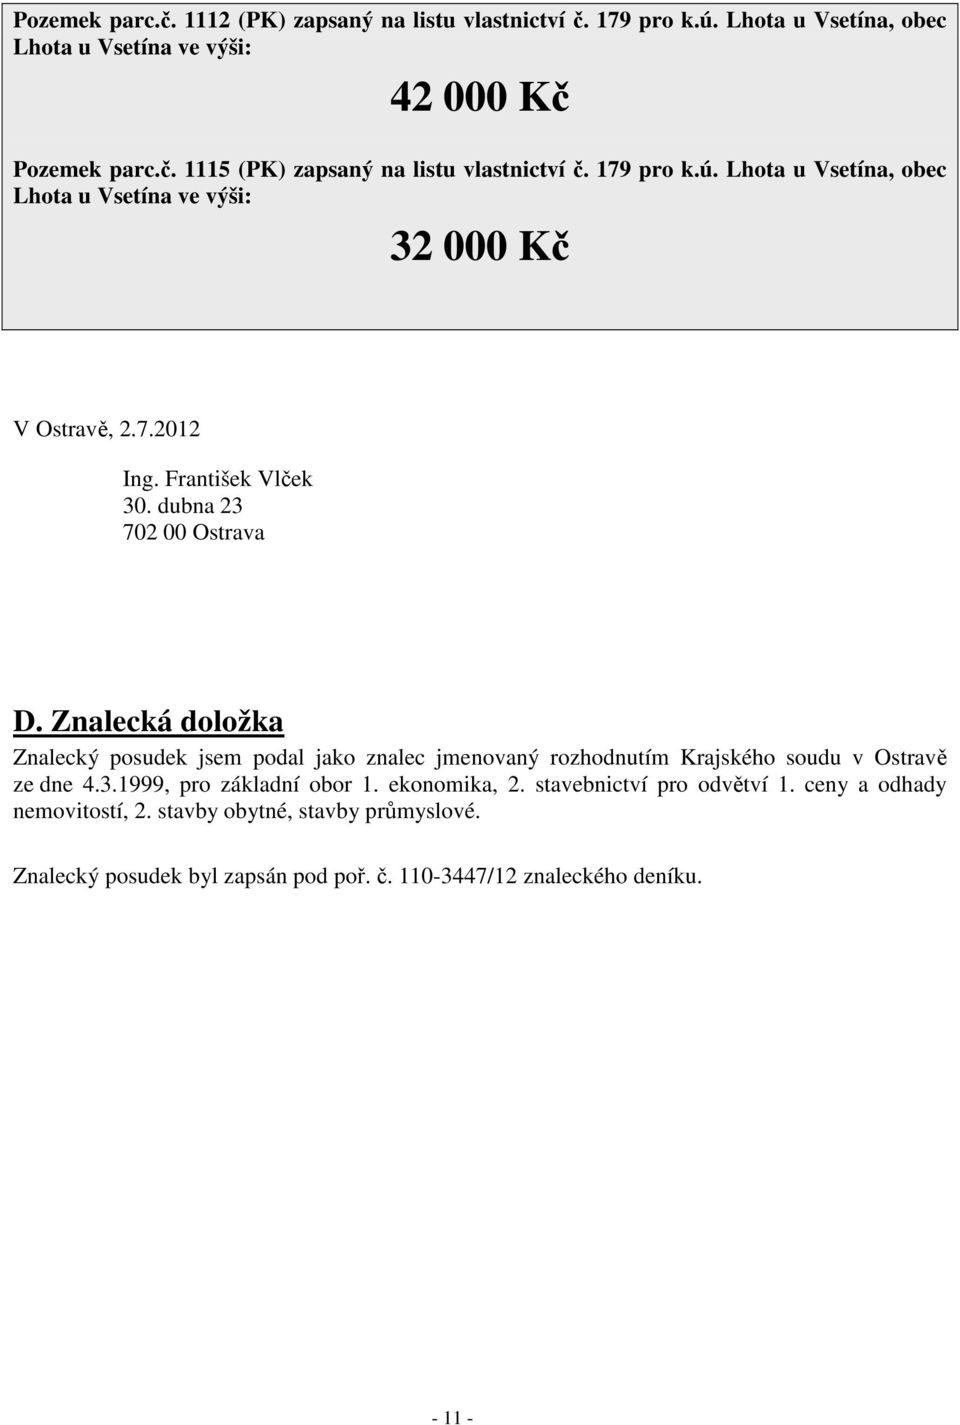 Znalecká doložka Znalecký posudek jsem podal jako znalec jmenovaný rozhodnutím Krajského soudu v Ostravě ze dne 4.3.1999, pro základní obor 1. ekonomika, 2.